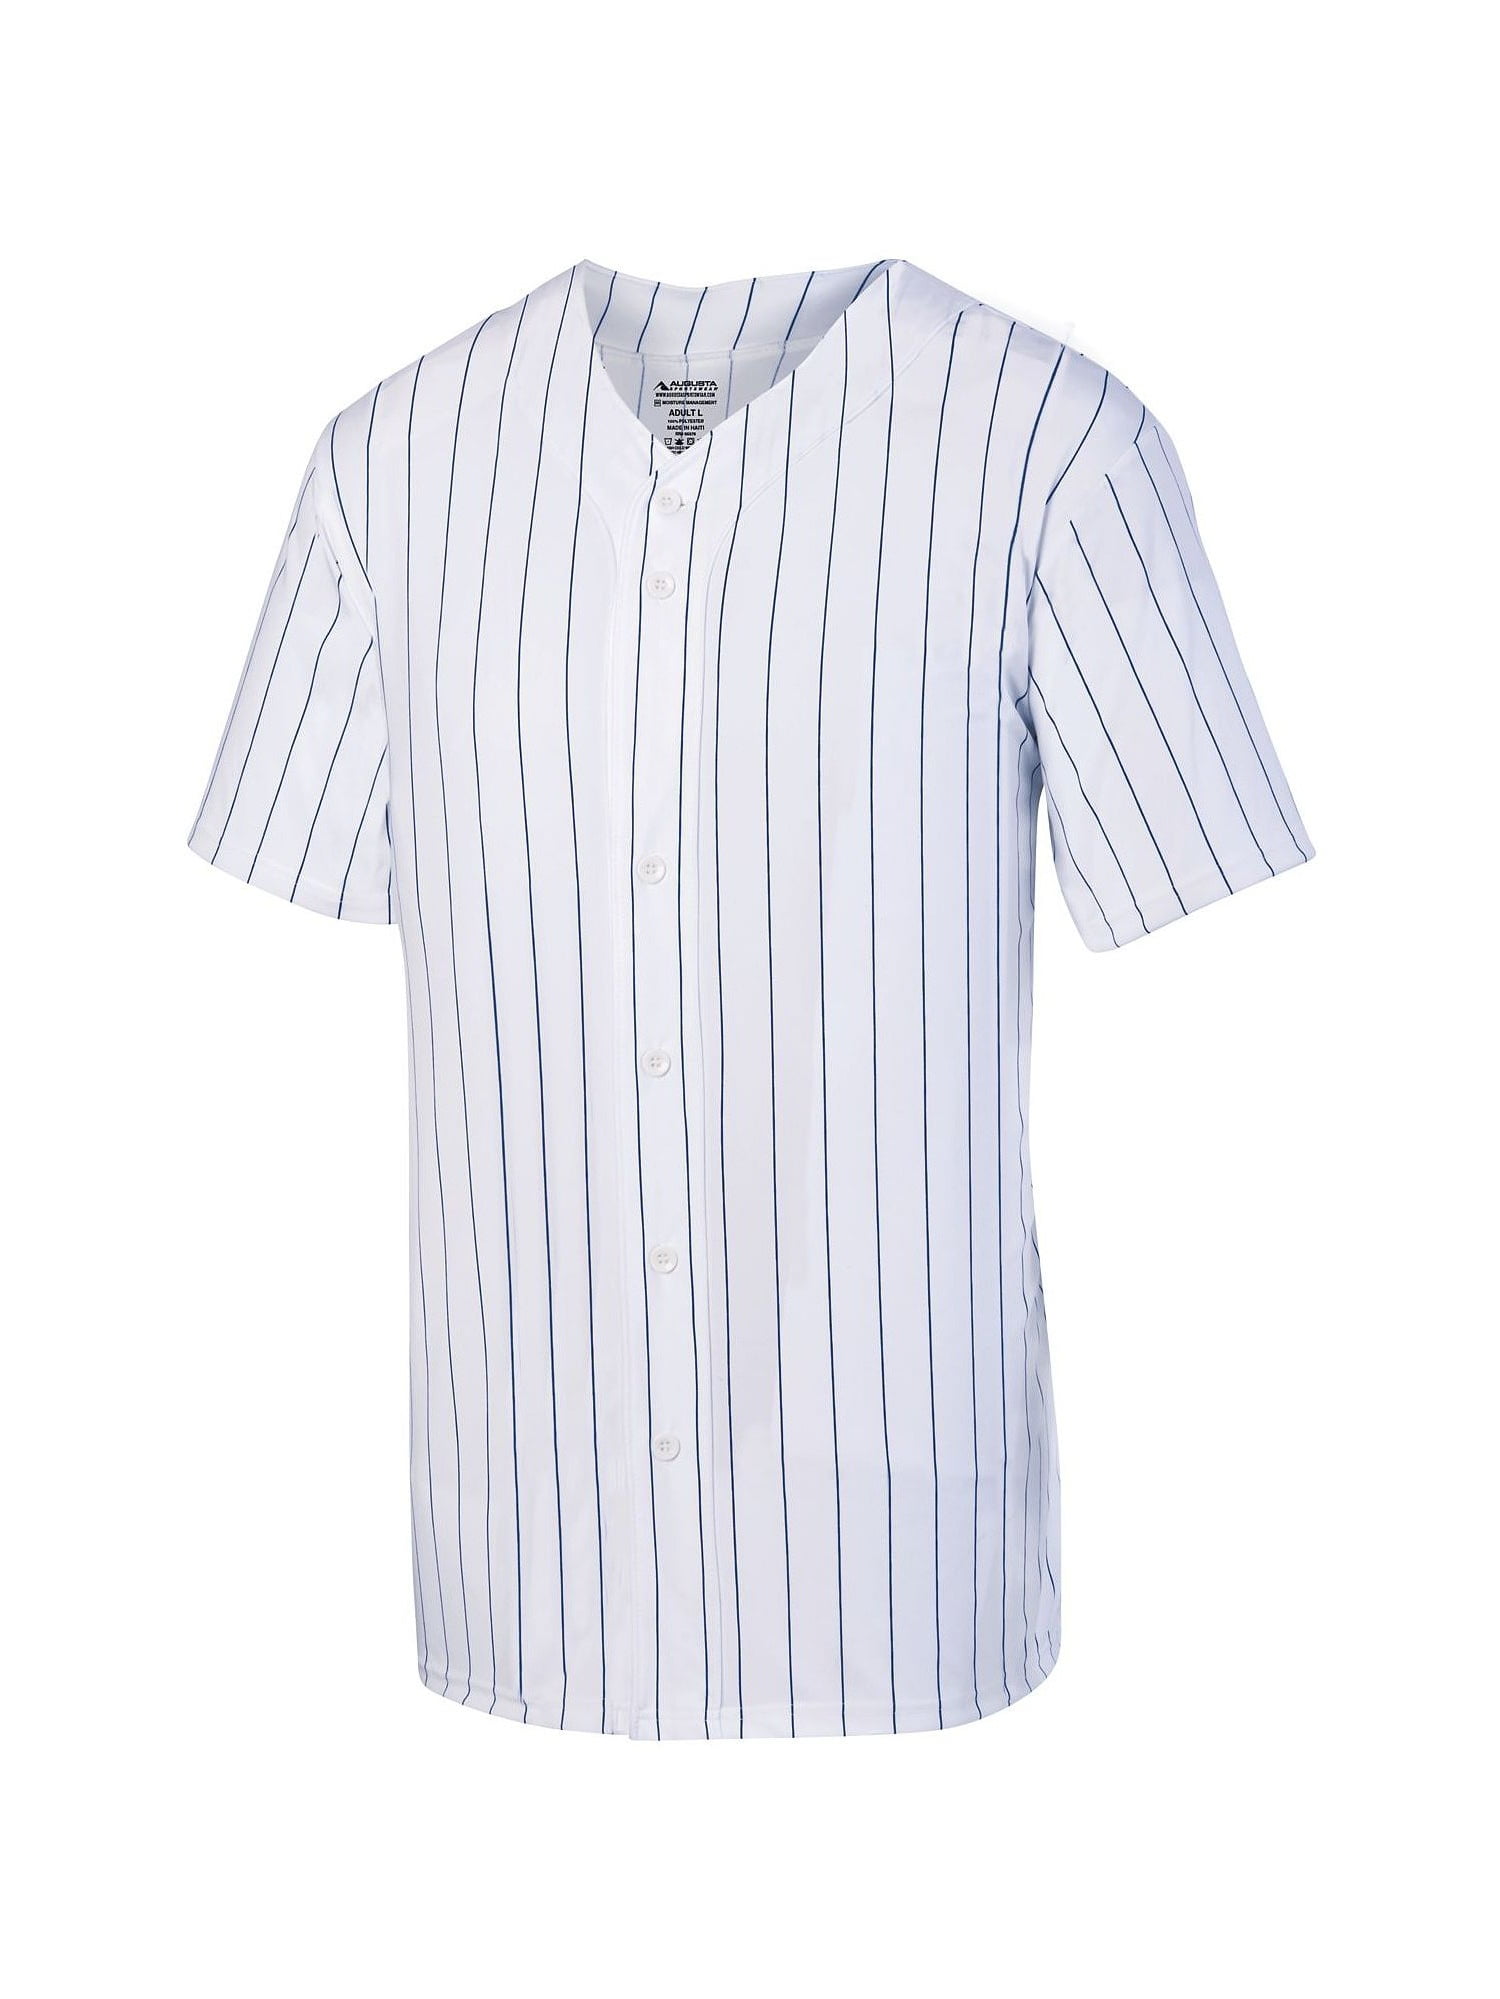 white baseball jersey shirt